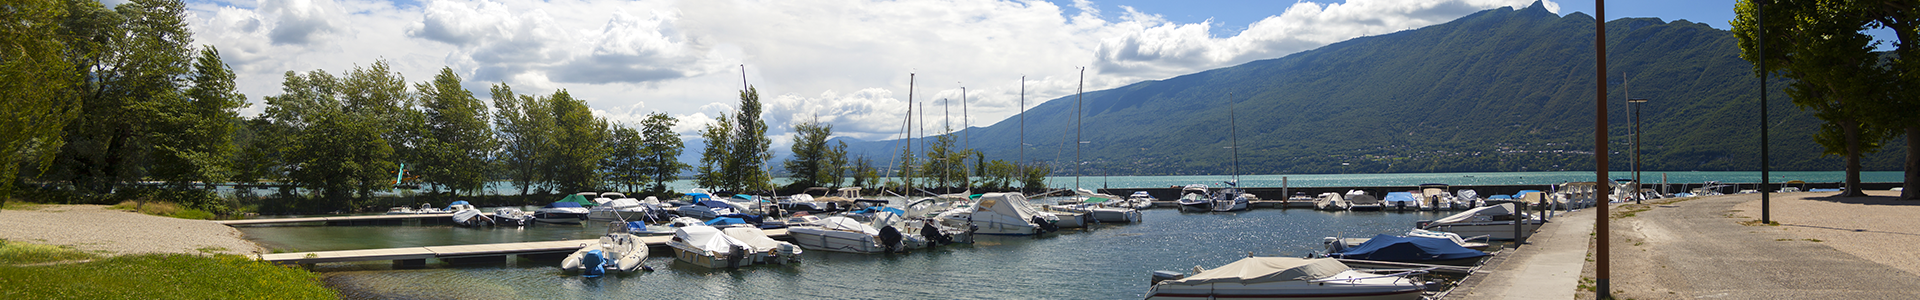 Vallat Immo lacs: Vente de maisons et d'appartements autour du lac d'Annecy, du lac du Bourget et Aix-les-Bains